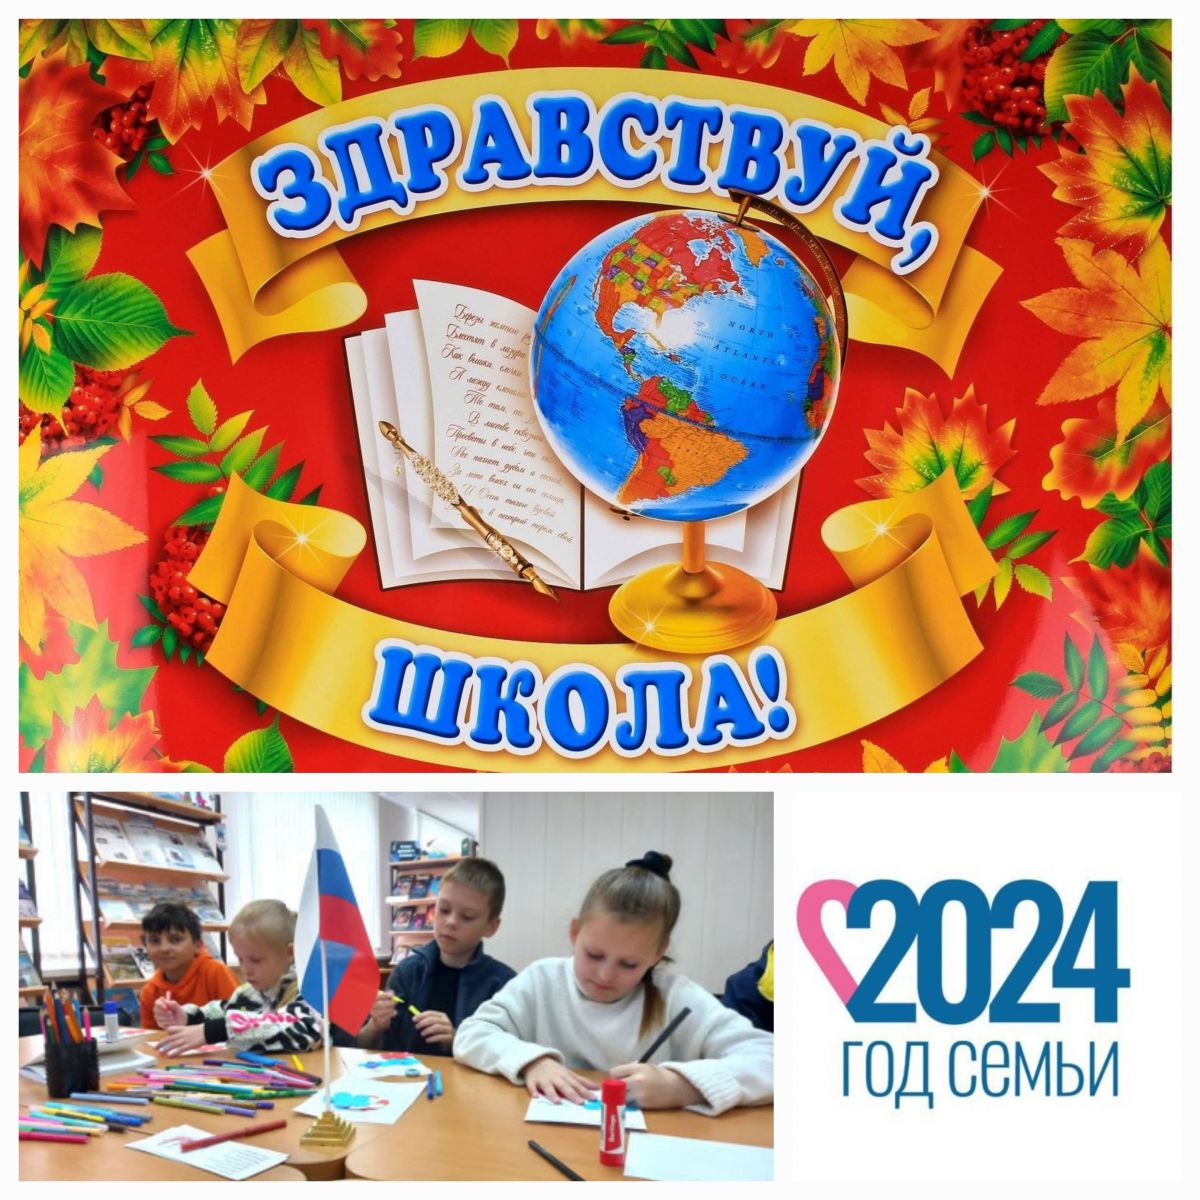 Единовременное денежное пособие в размере 5 000 рублей на каждого ребенка-учащегося общеобразовательной организации